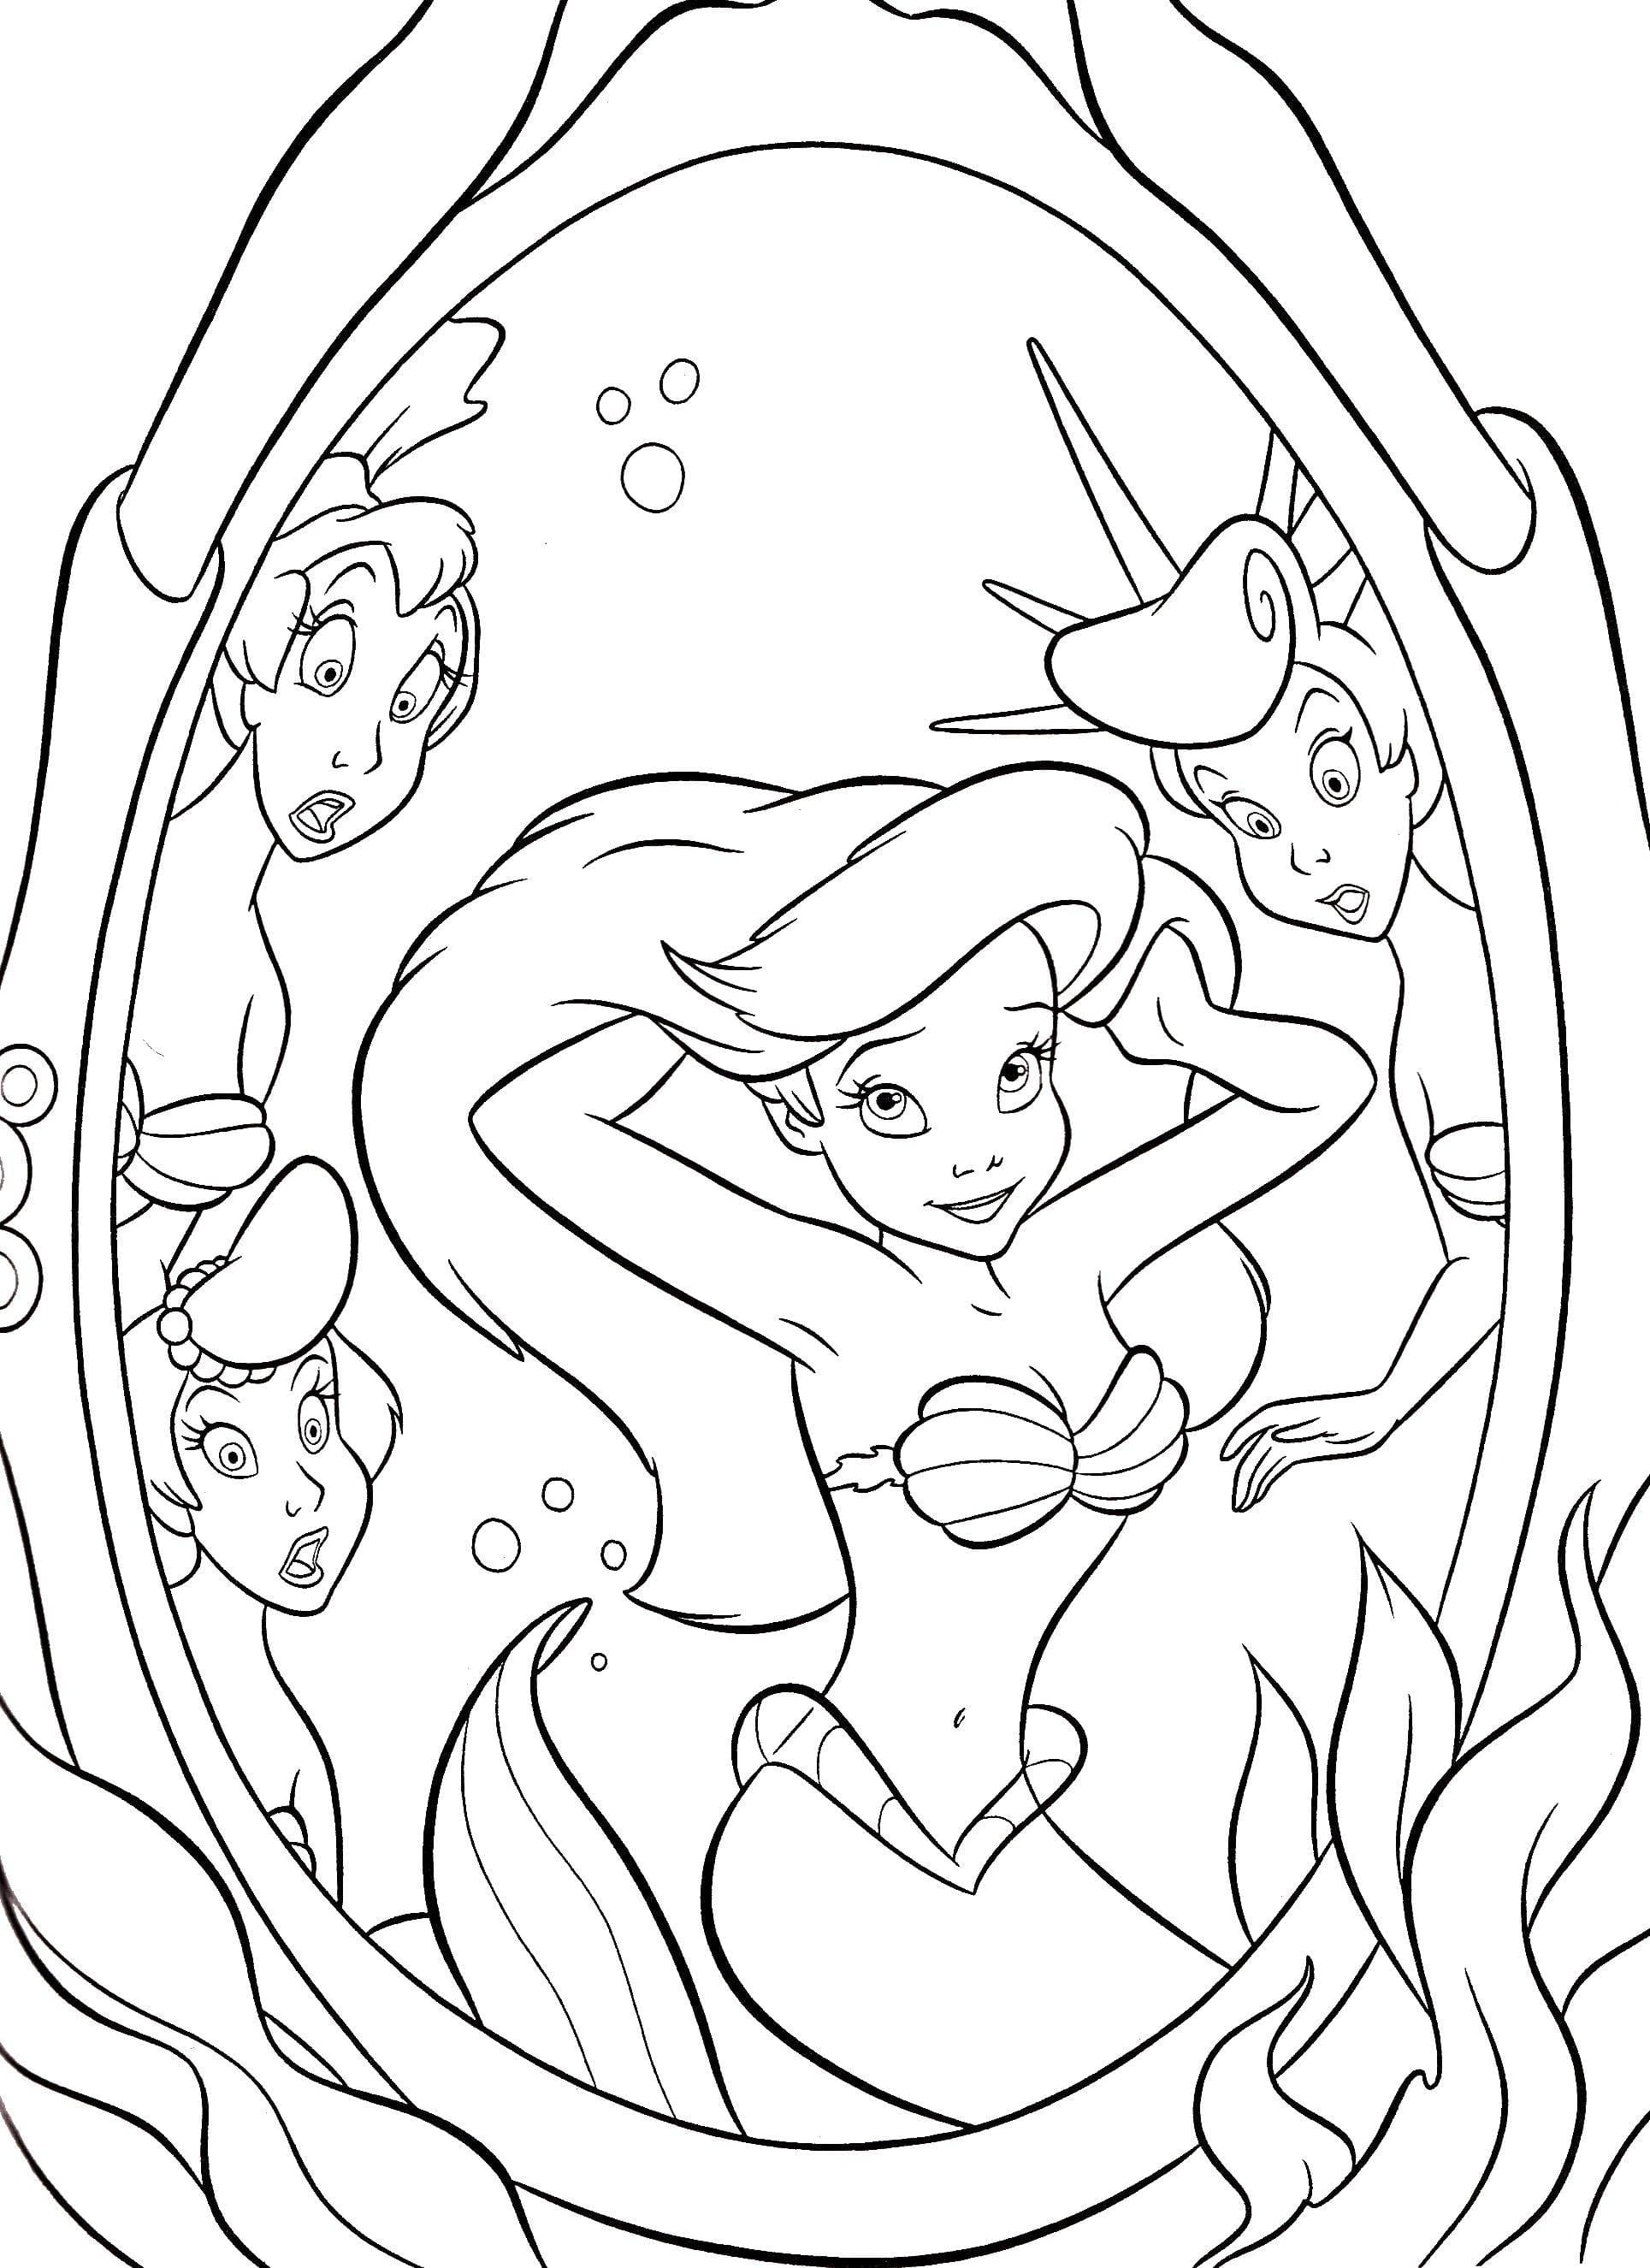 Dibujo de Ariel 32 de La sirenita para imprimir y colorear